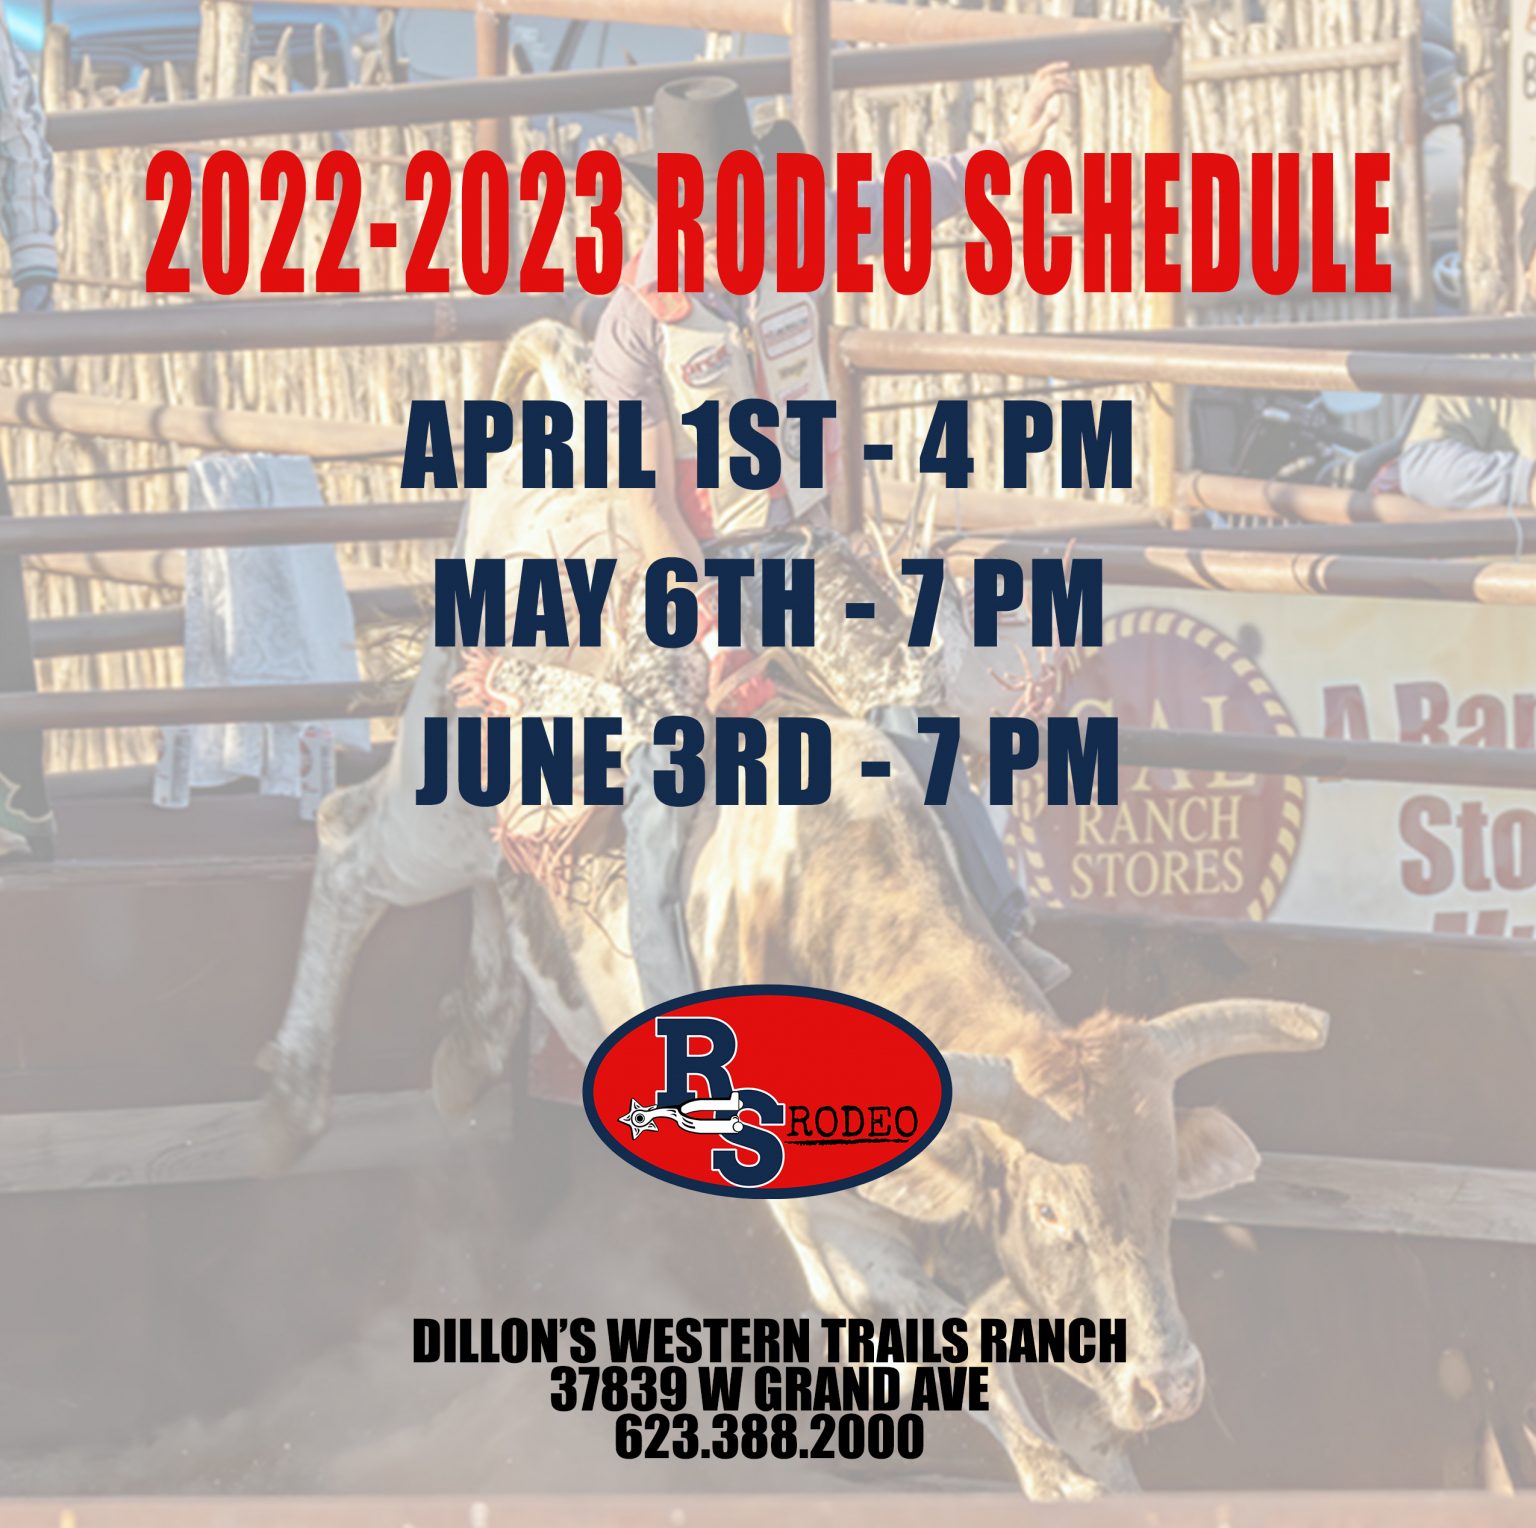 20222023 Western Trails Ranch Rodeo Calendar » Amazing BBQ